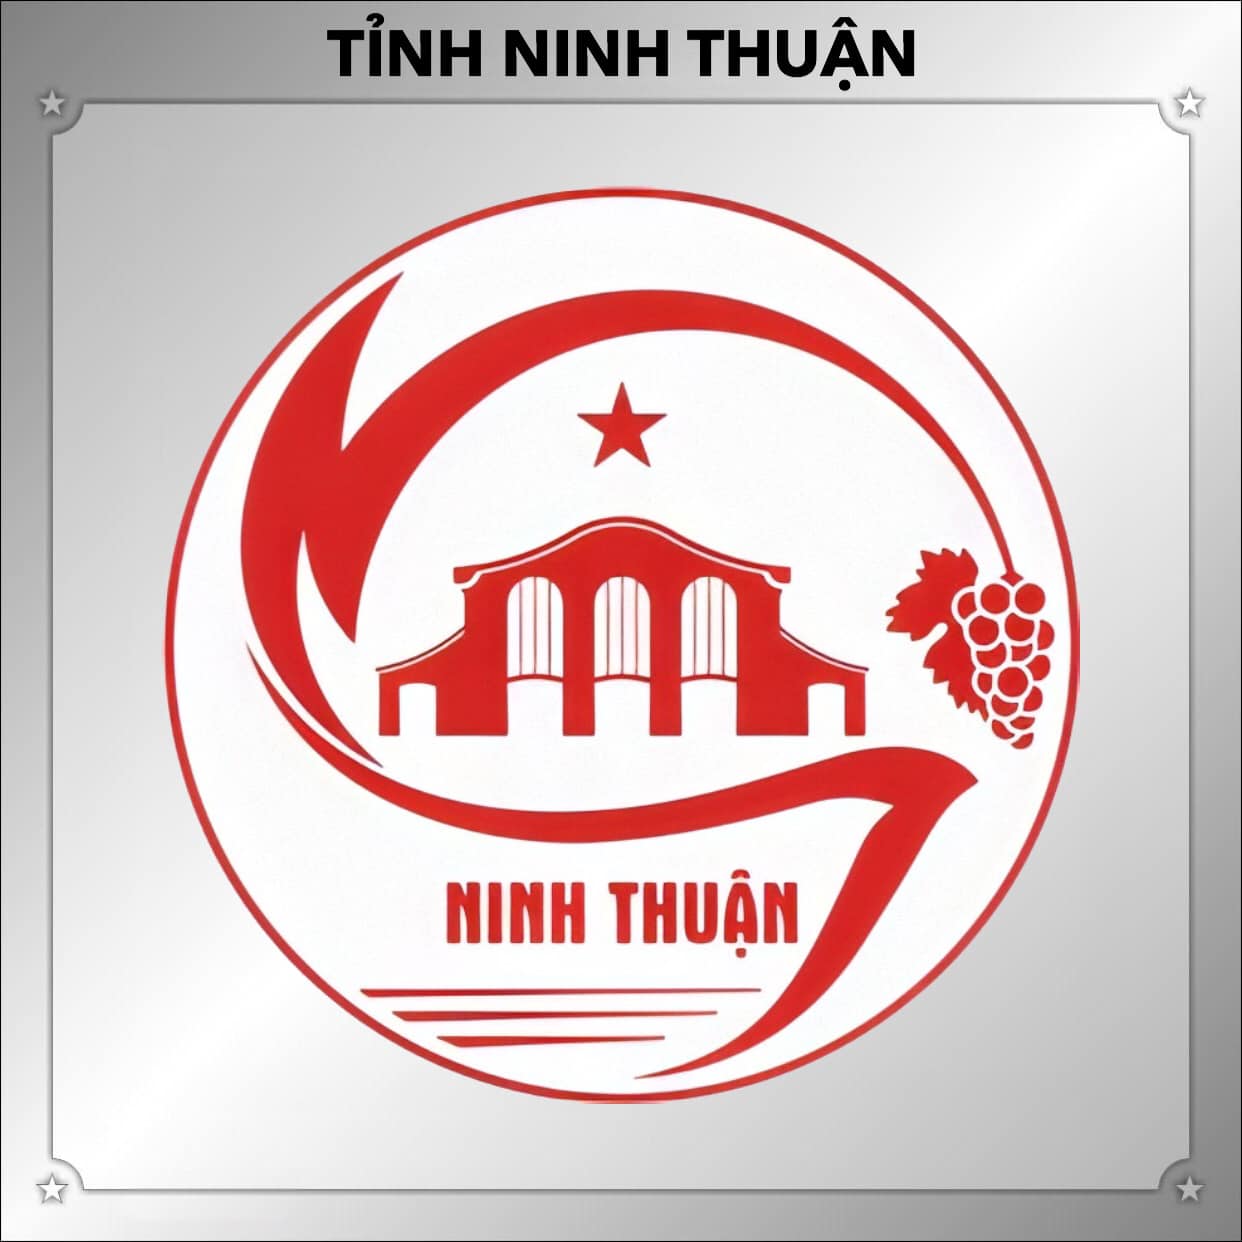 Cho thuê nhà đất tại Ninh Thuận